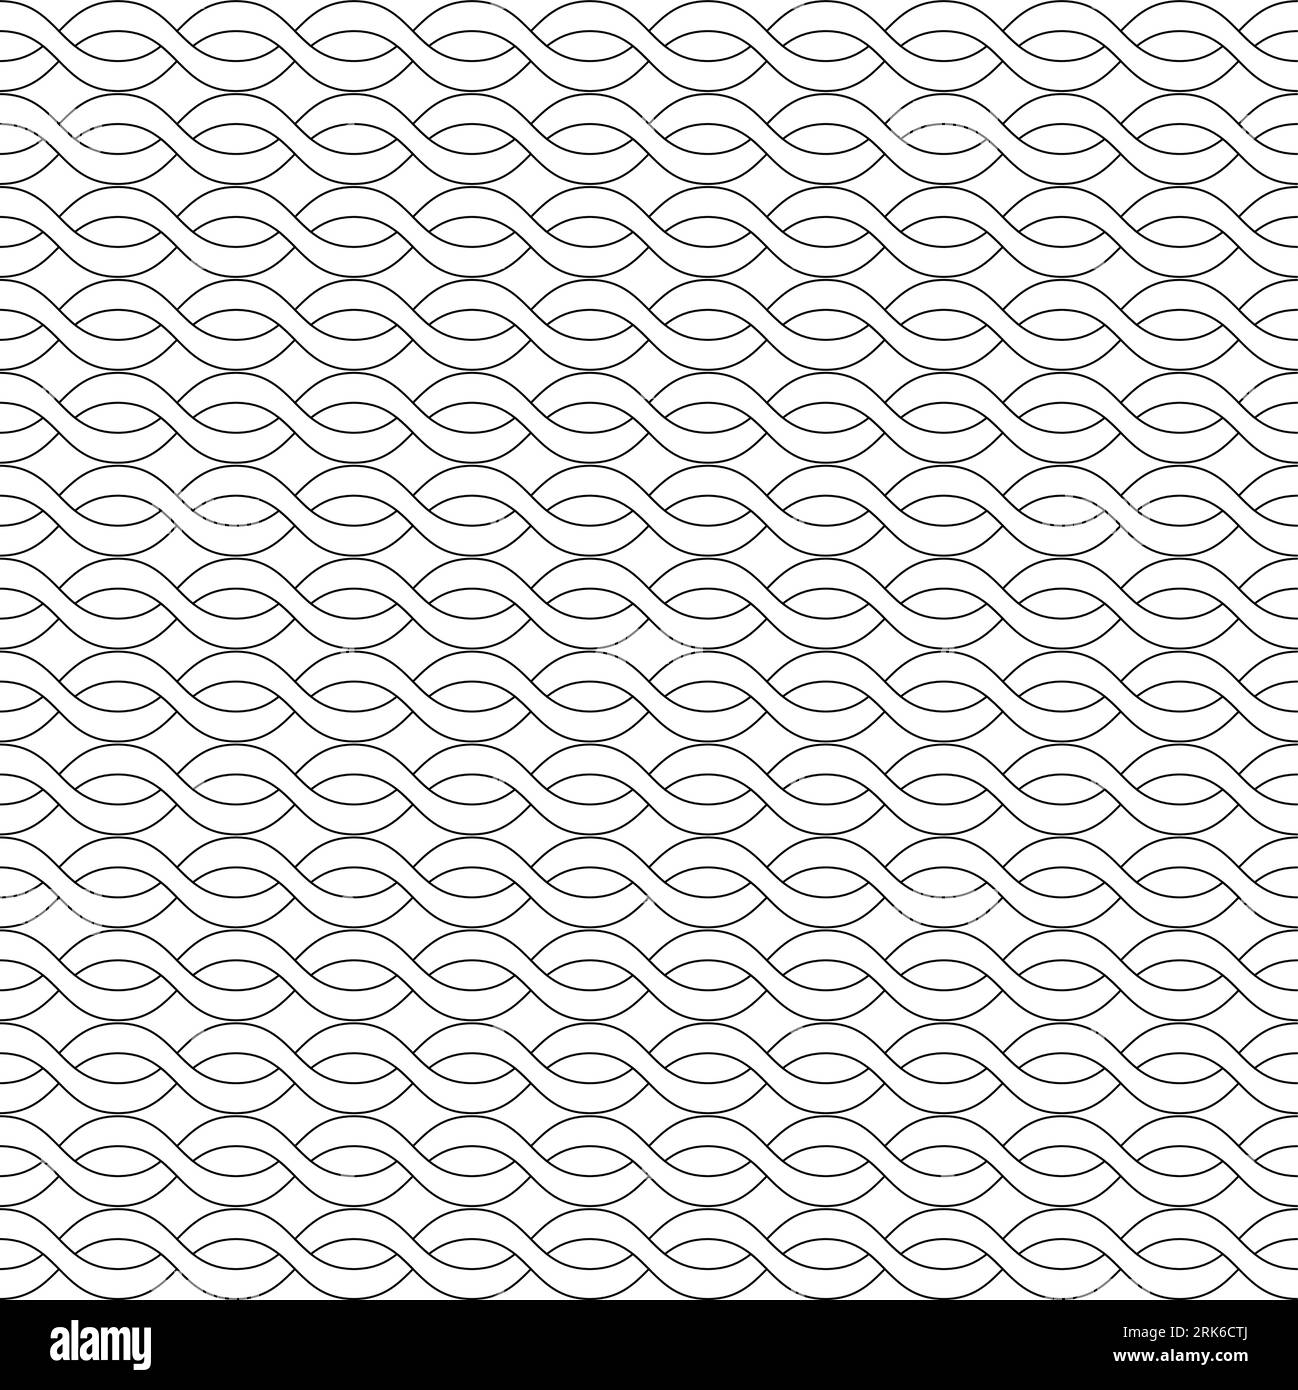 modello di linea. Motivo minimalista geometrico semplice in bianco e nero, linee sottili diagonali. Può essere utilizzato come sfondo, sfondo o texture. Raccolta Illustrazione Vettoriale